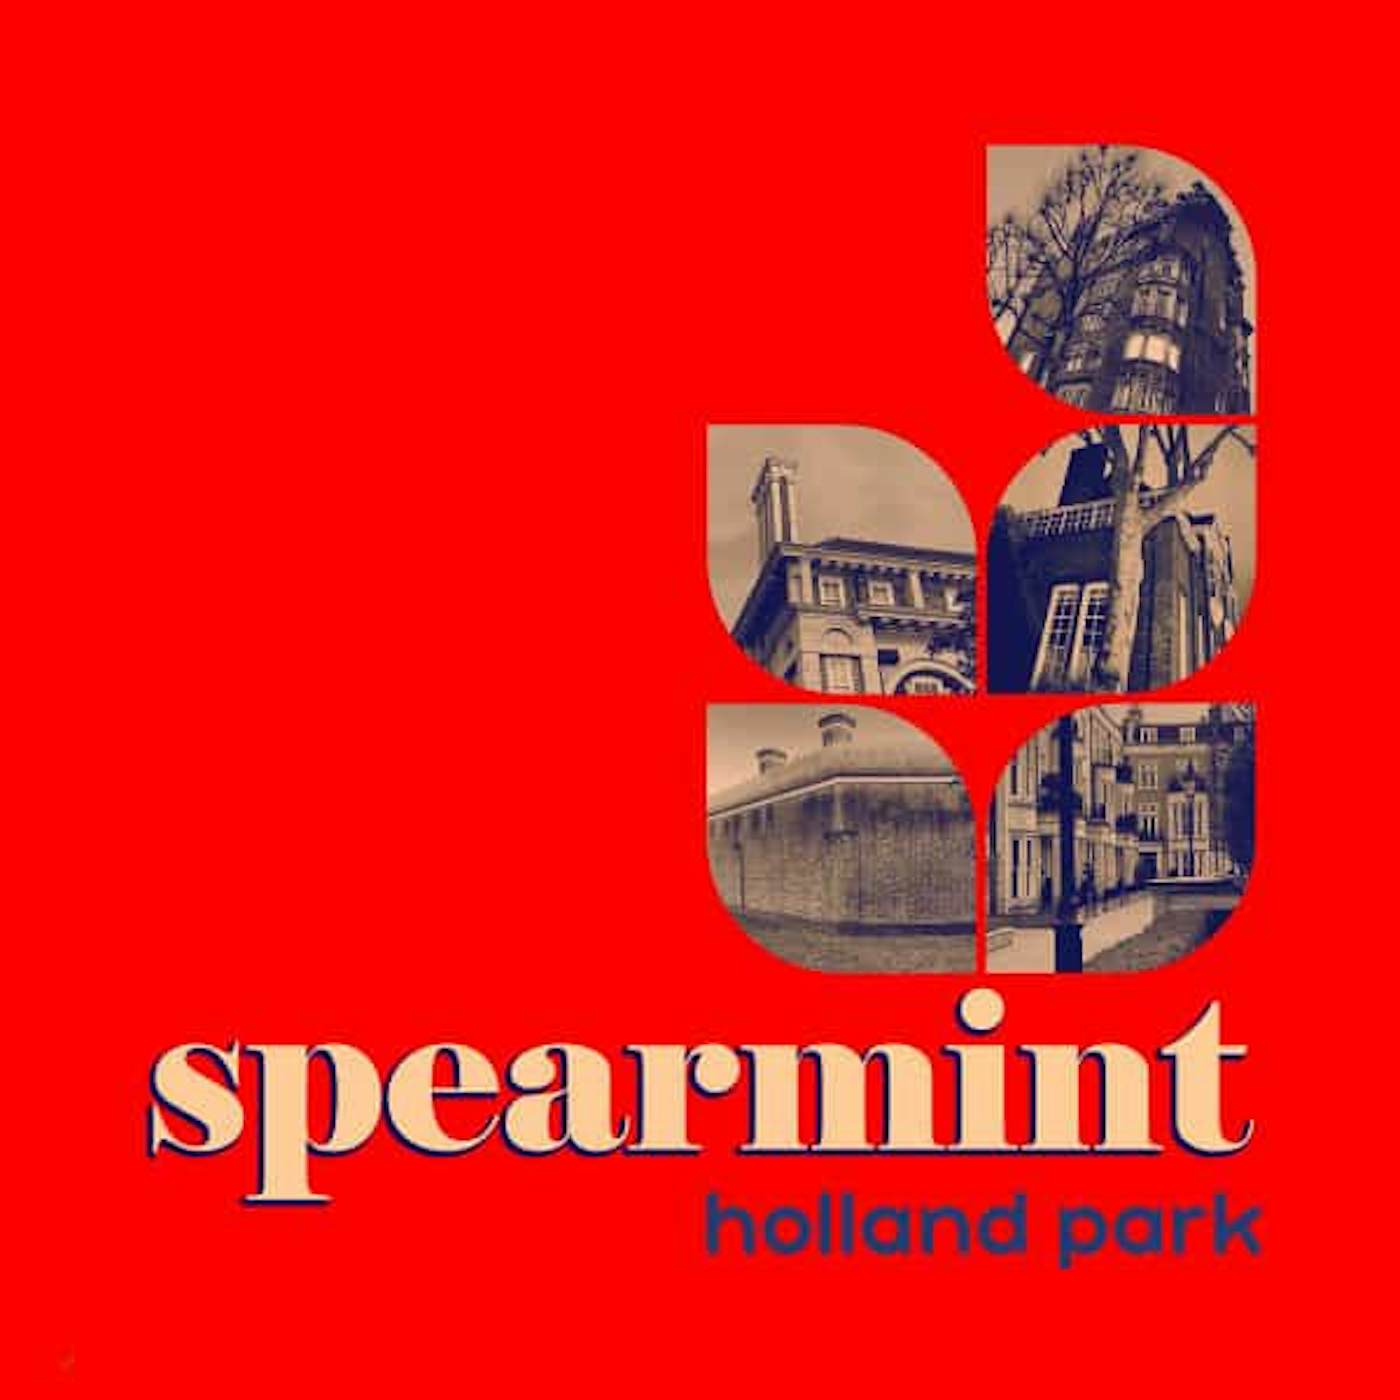 Spearmint Holland Park Vinyl Record